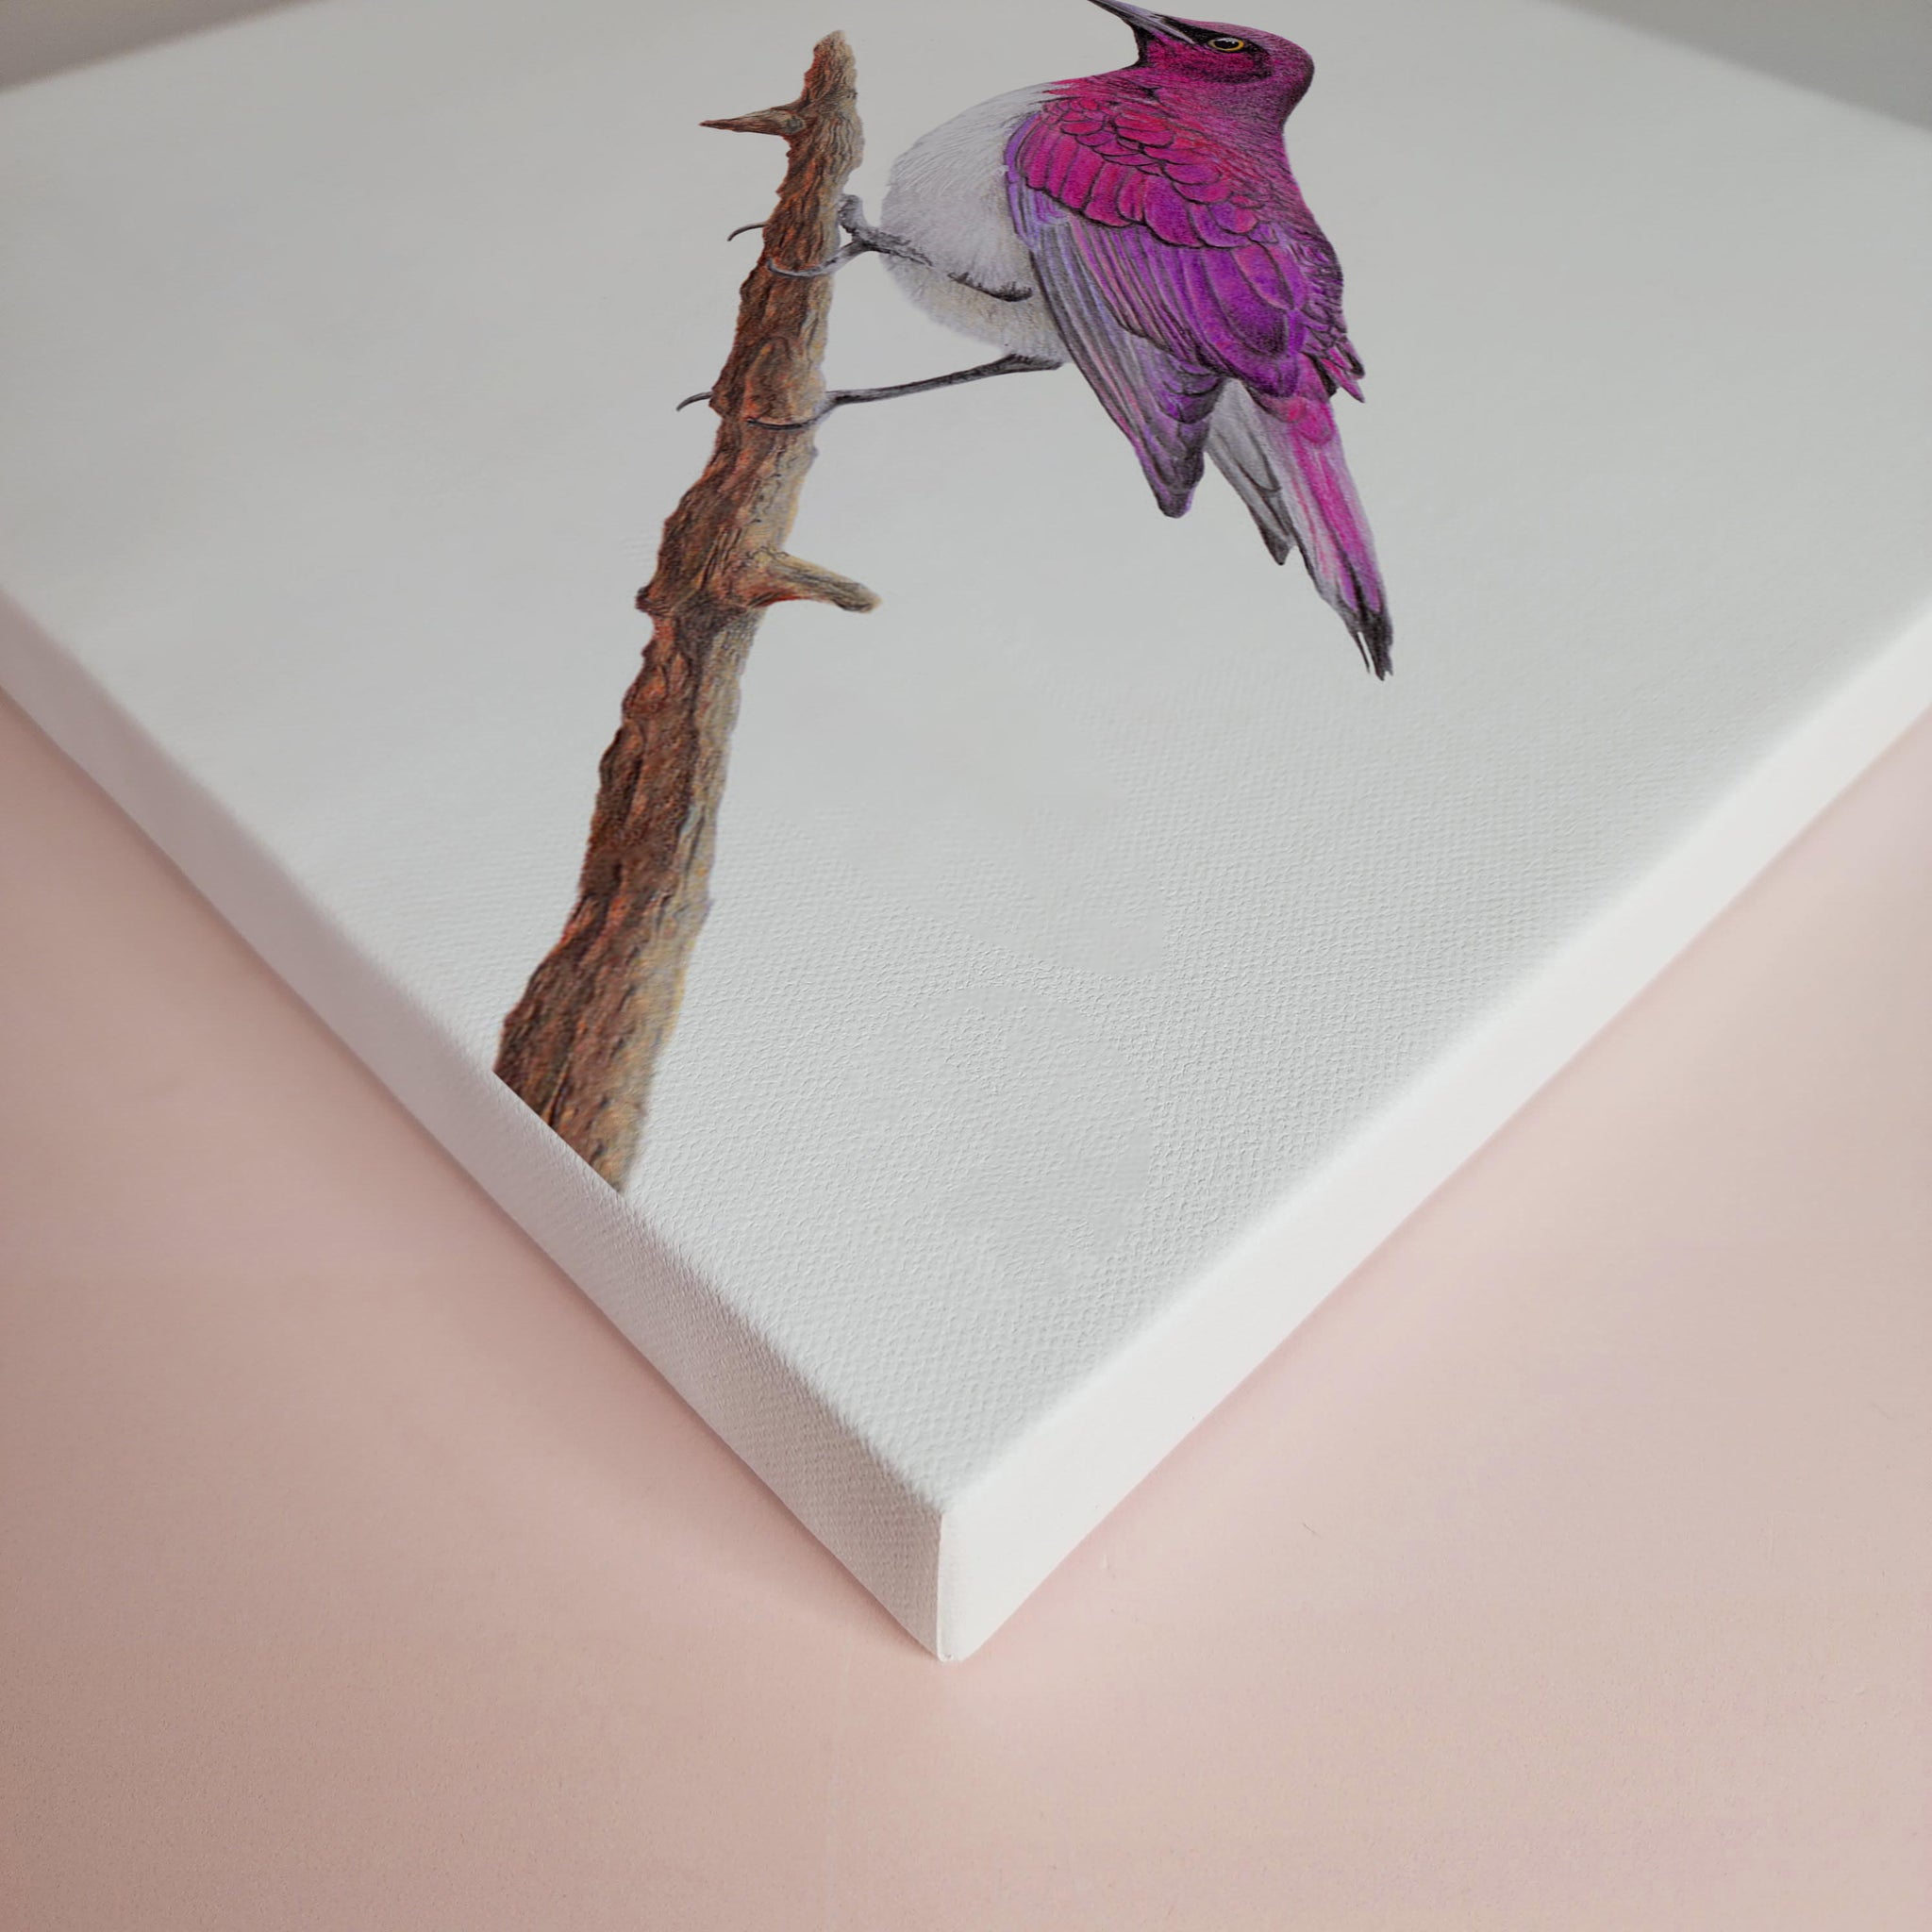 Violet Backed Starling bird artwork on canvas frame 